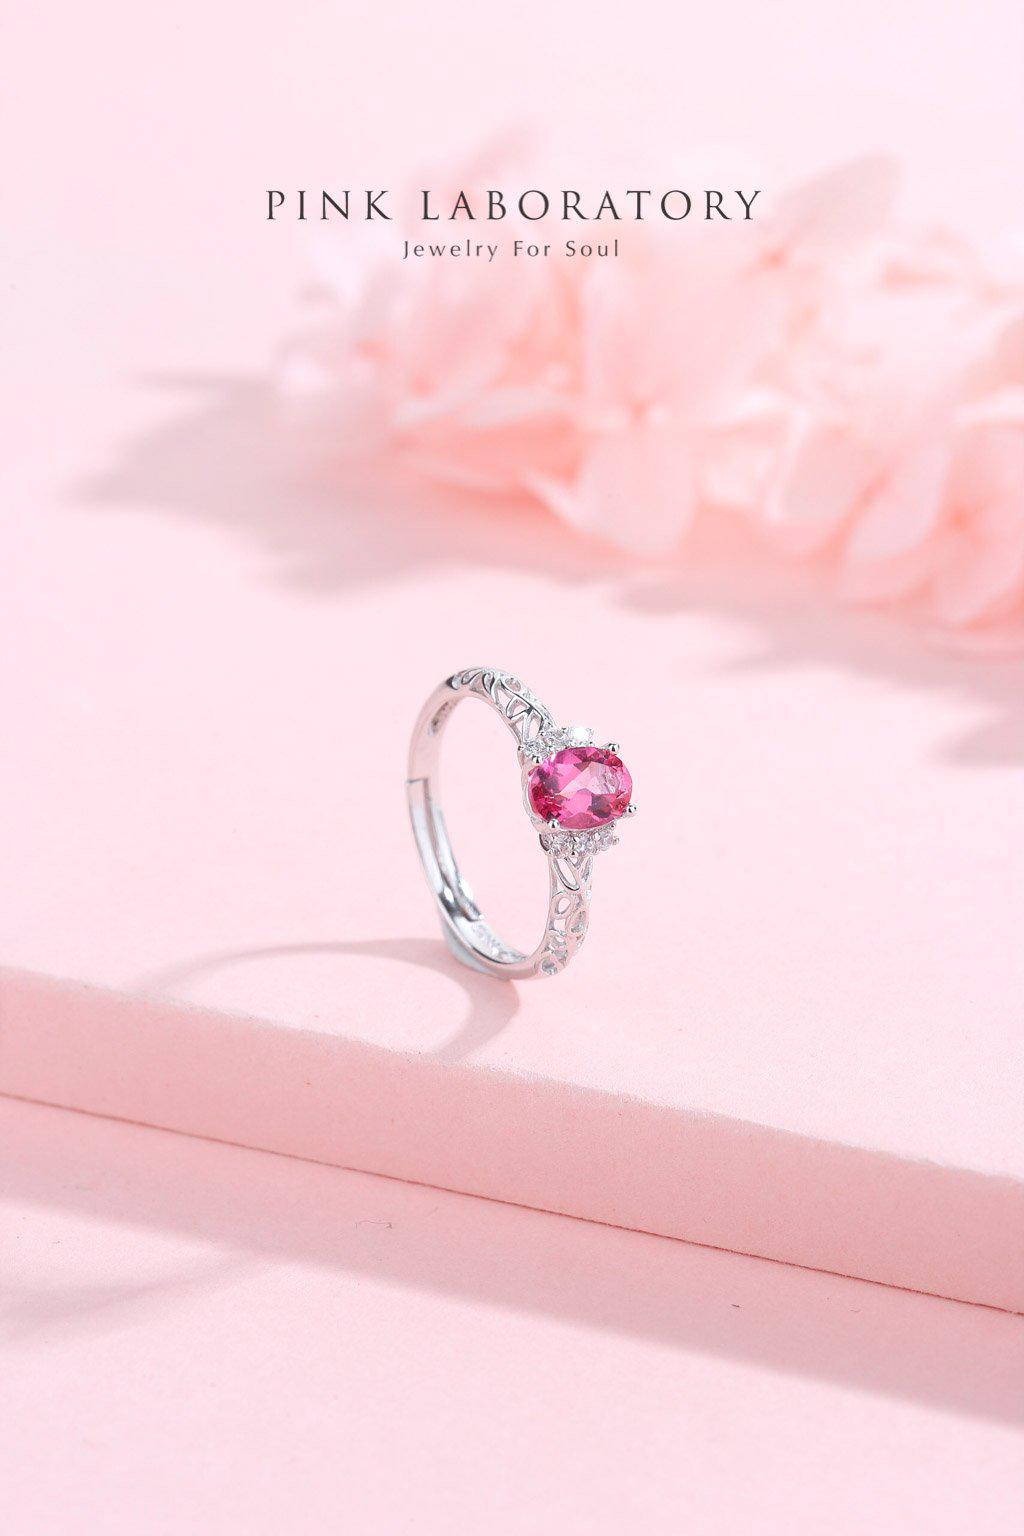 粉紅托帕石925純銀精鍍亮澤白金戒指 - Pink Laboratory